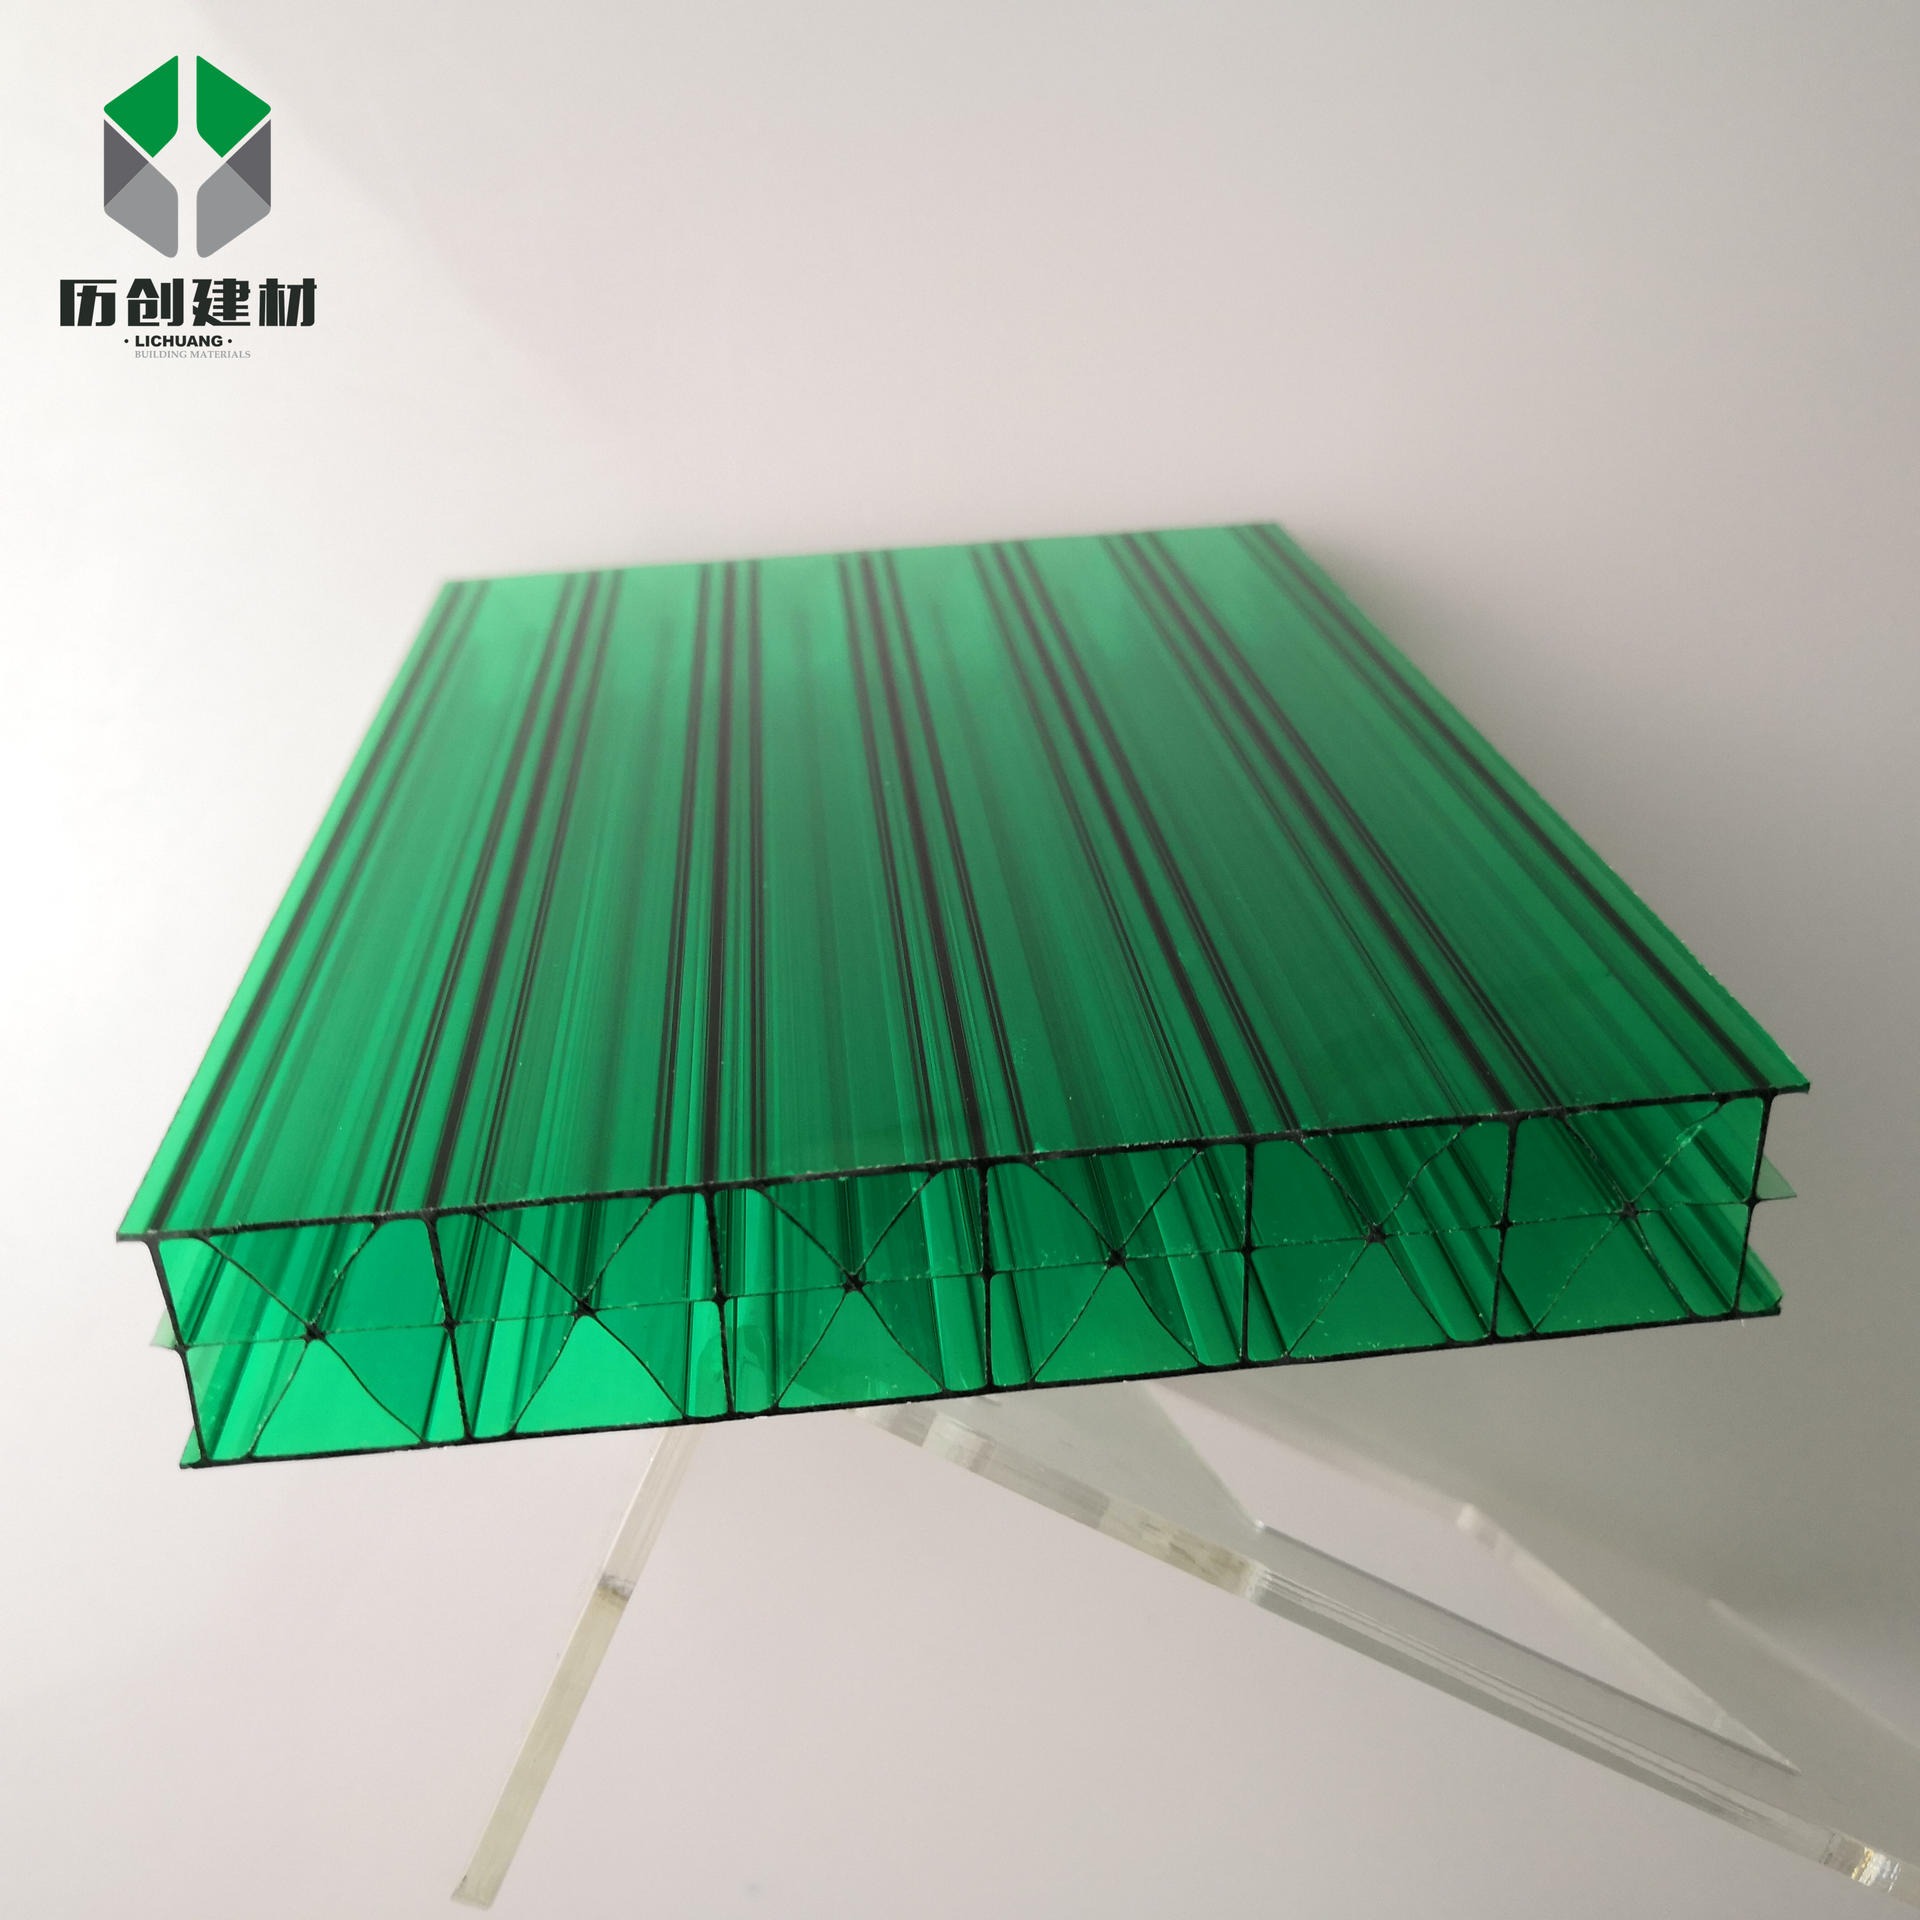 大棚透明阳光板 PC四层米字格板工程中空板聚碳酸酯采光阳光板定制历创